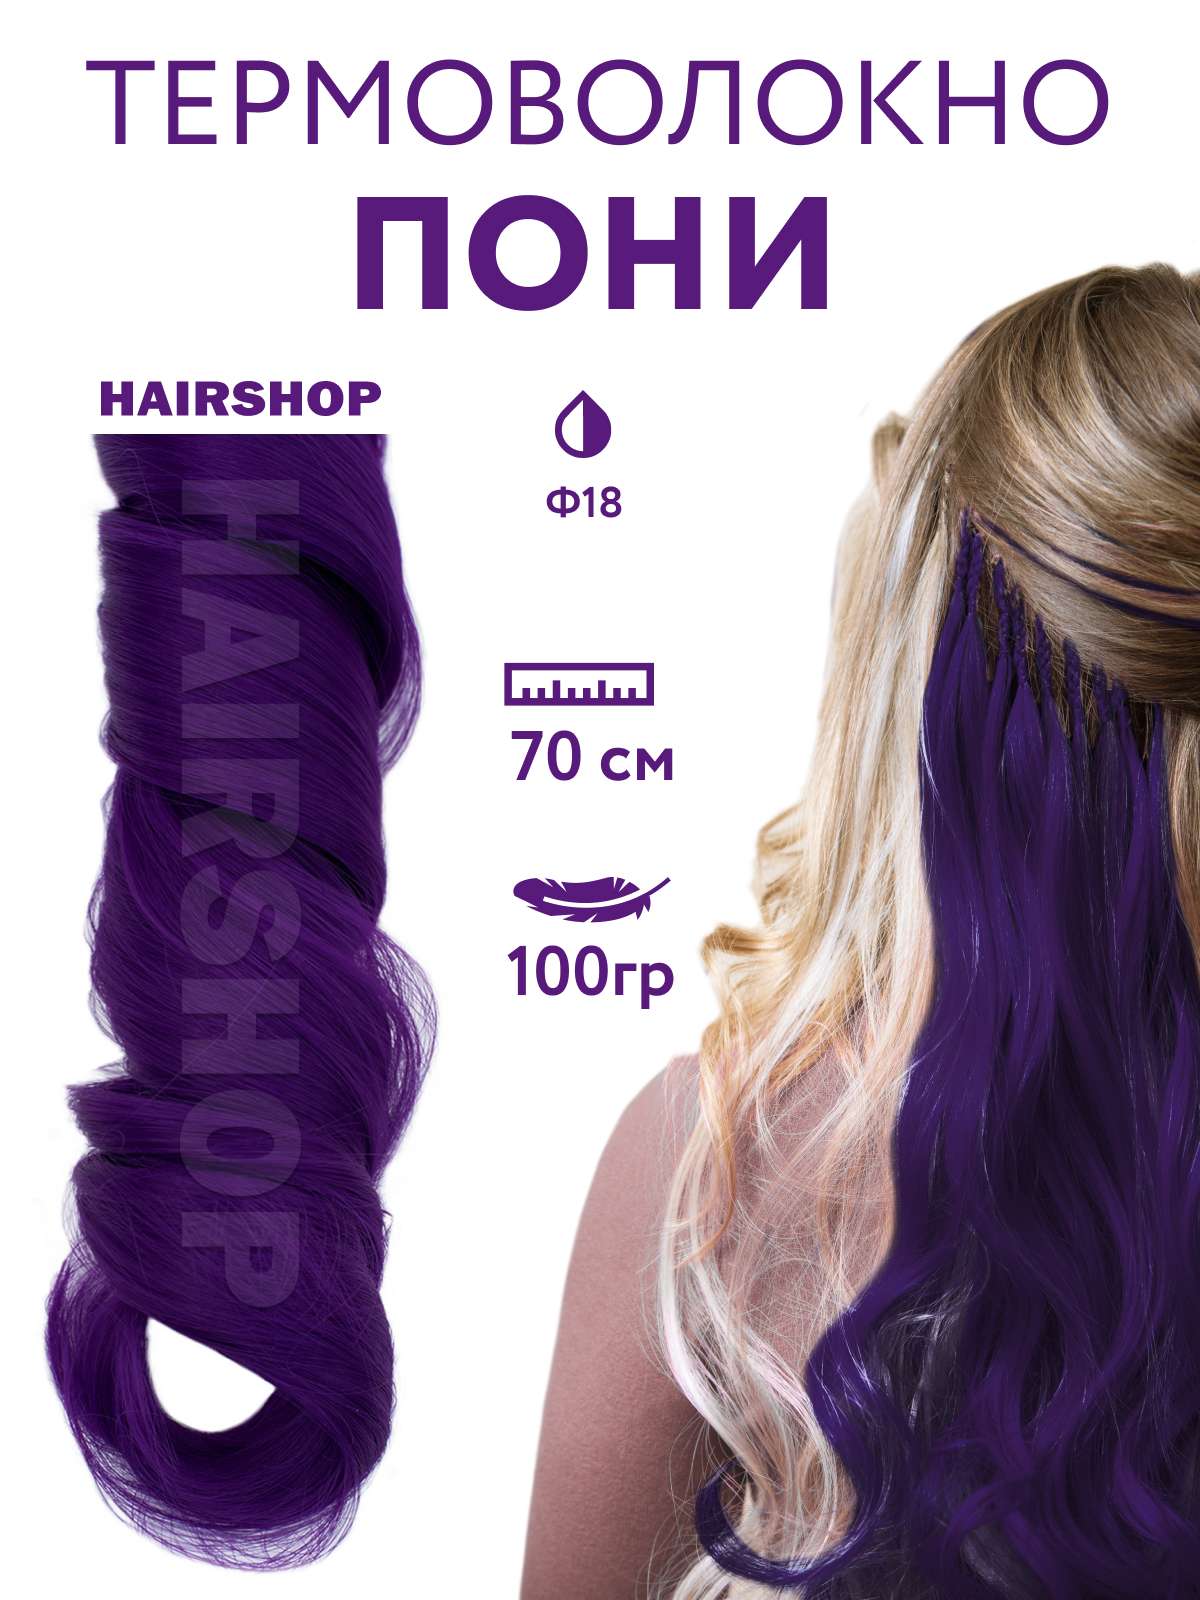 Канекалон HAIRSHOP Пони HairUp для точечного афронаращивания Ф18 Темно-фиолетовый 1,4м канекалон hairshop пони hairup для точечного афронаращивания 135s красно рыжий 1 4м